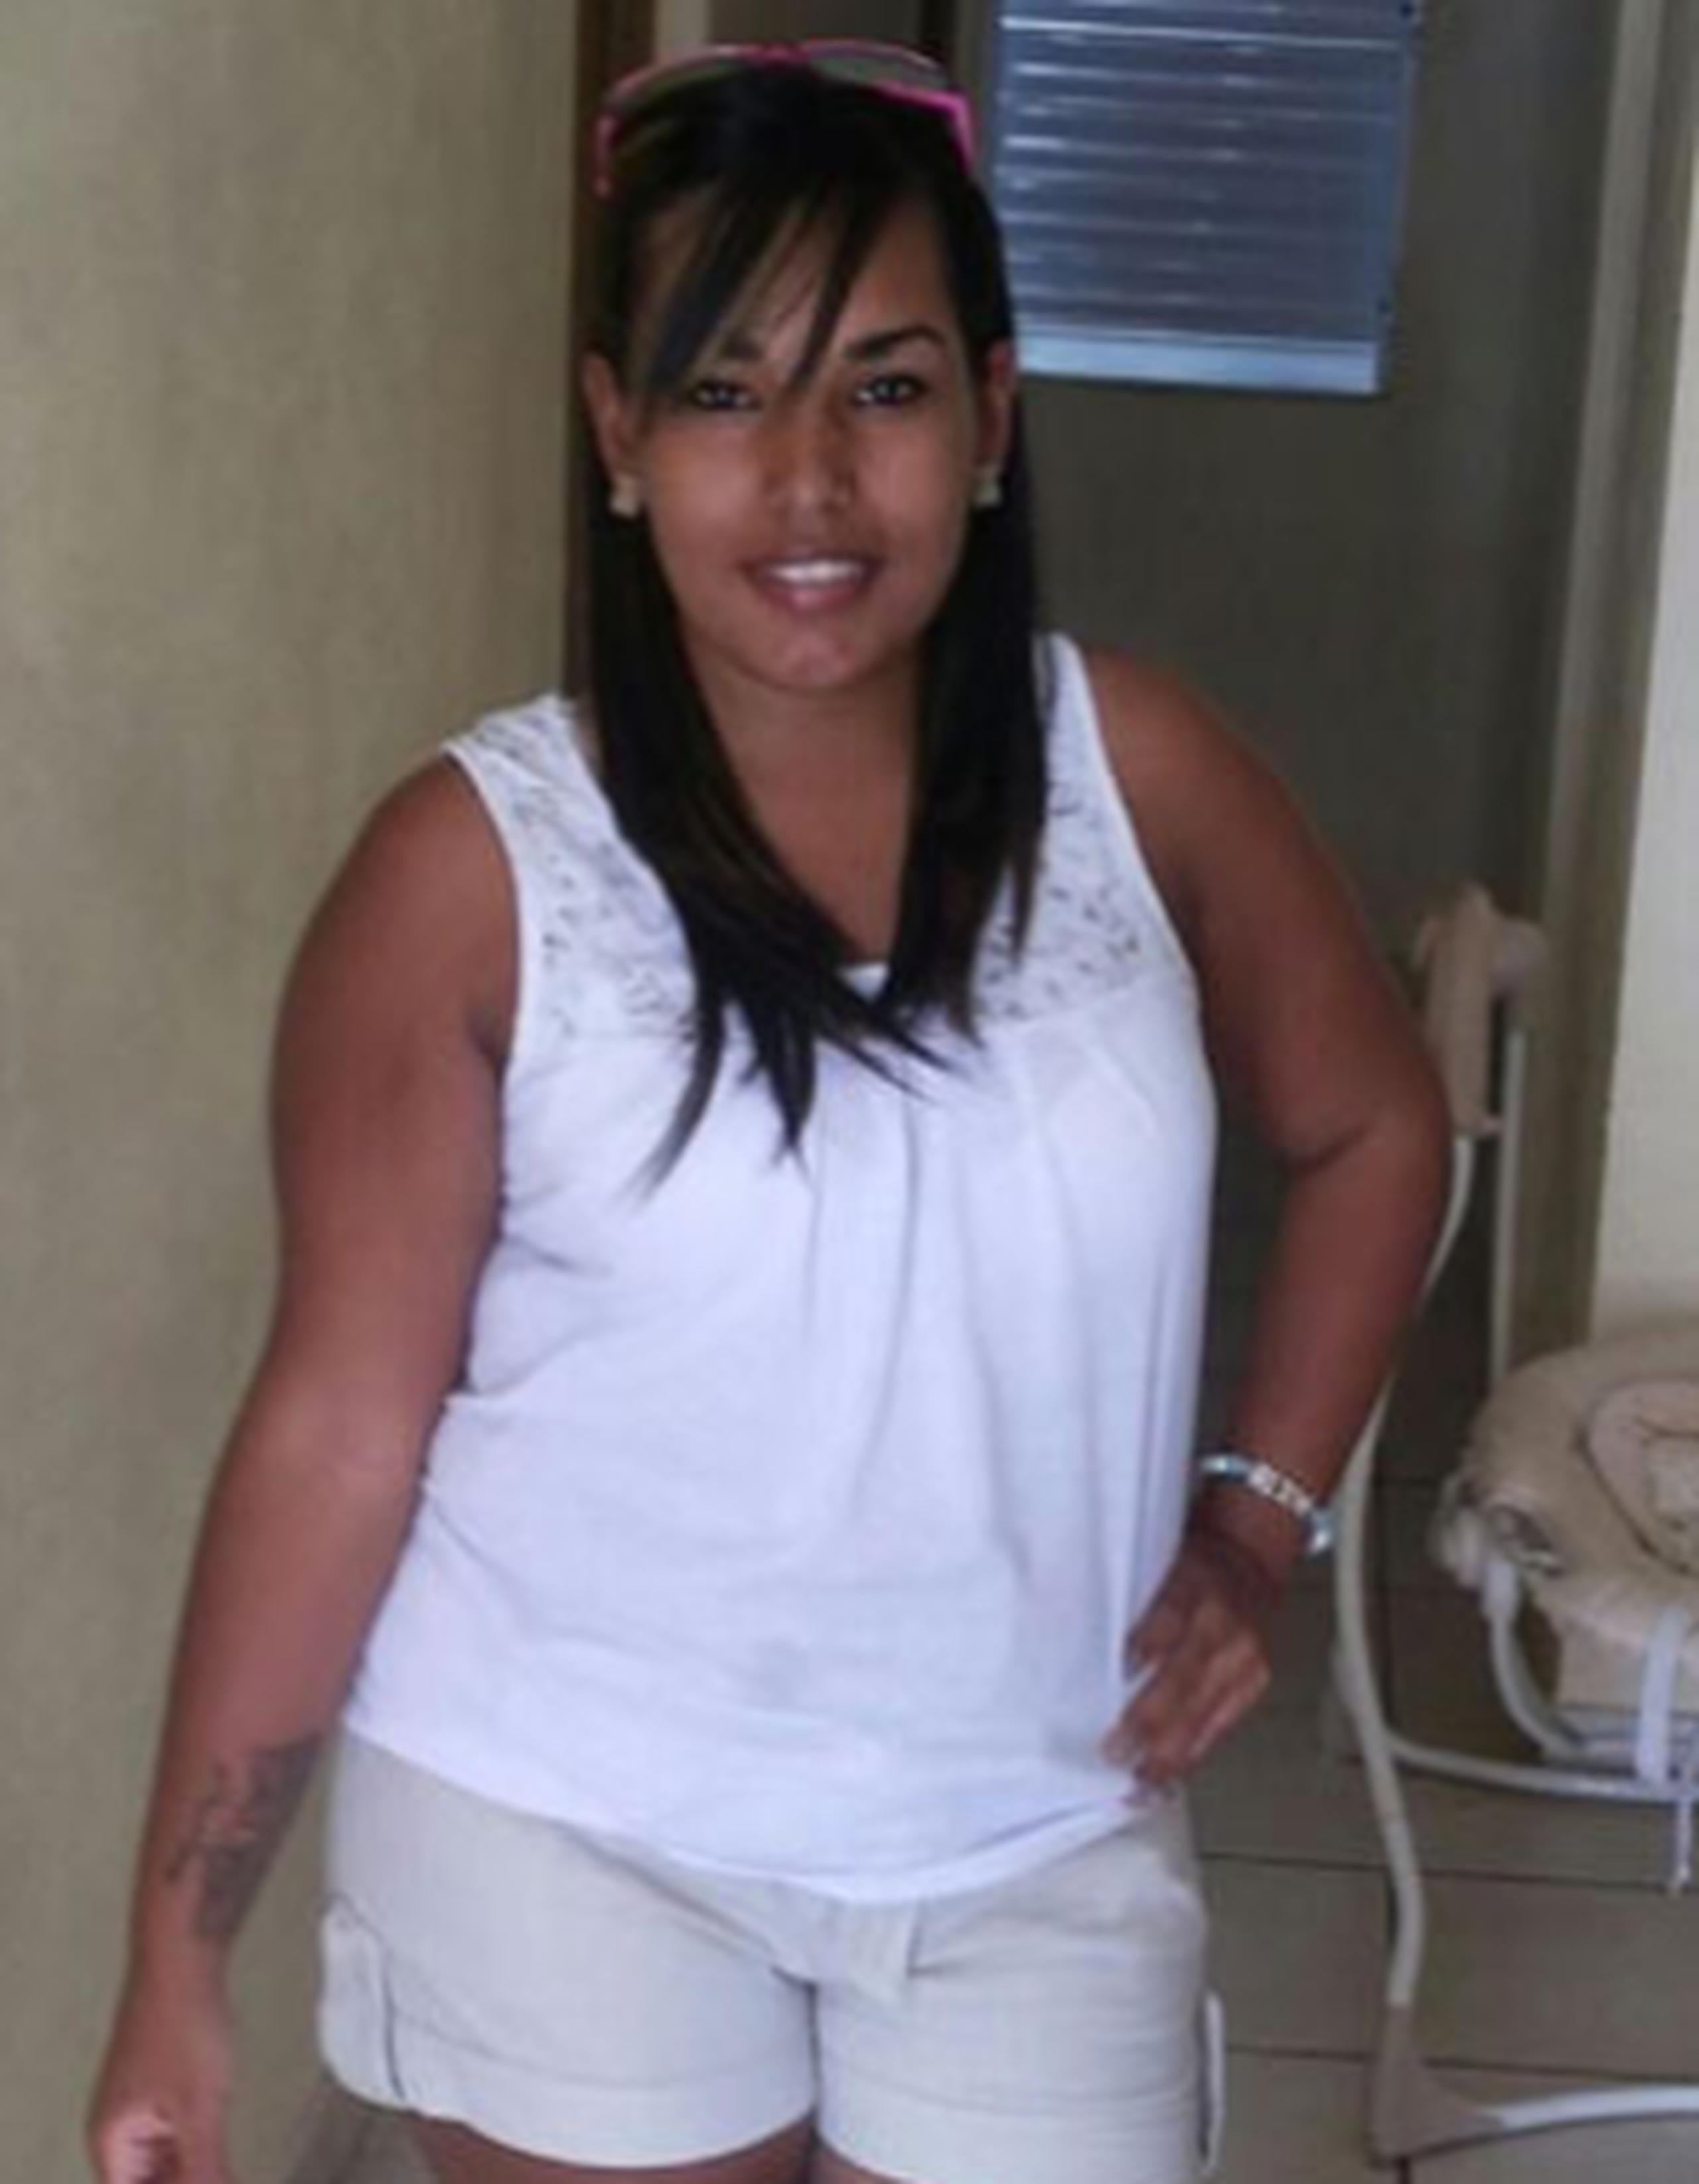 Marangelly Renta Pérez, de 22 años de edad, fue golpeada brutalmente en el rostro con un objeto punzante. (Facebook)